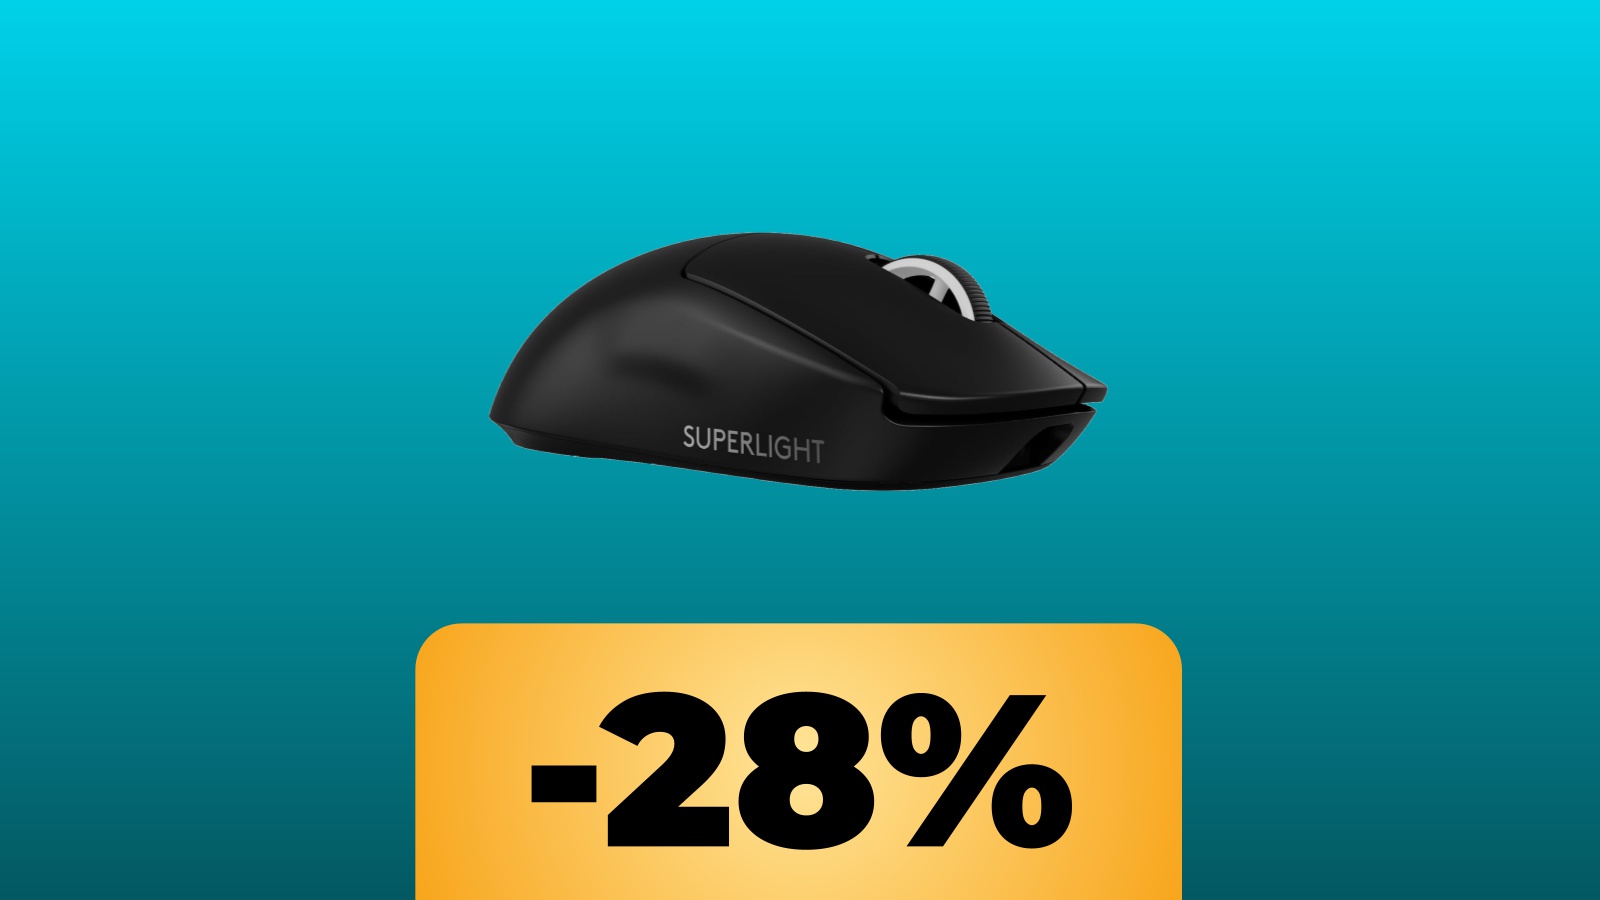 Il mouse Logitech G PRO X SUPERLIGHT 2 LIGHTSPEED è al prezzo minimo storico su Amazon